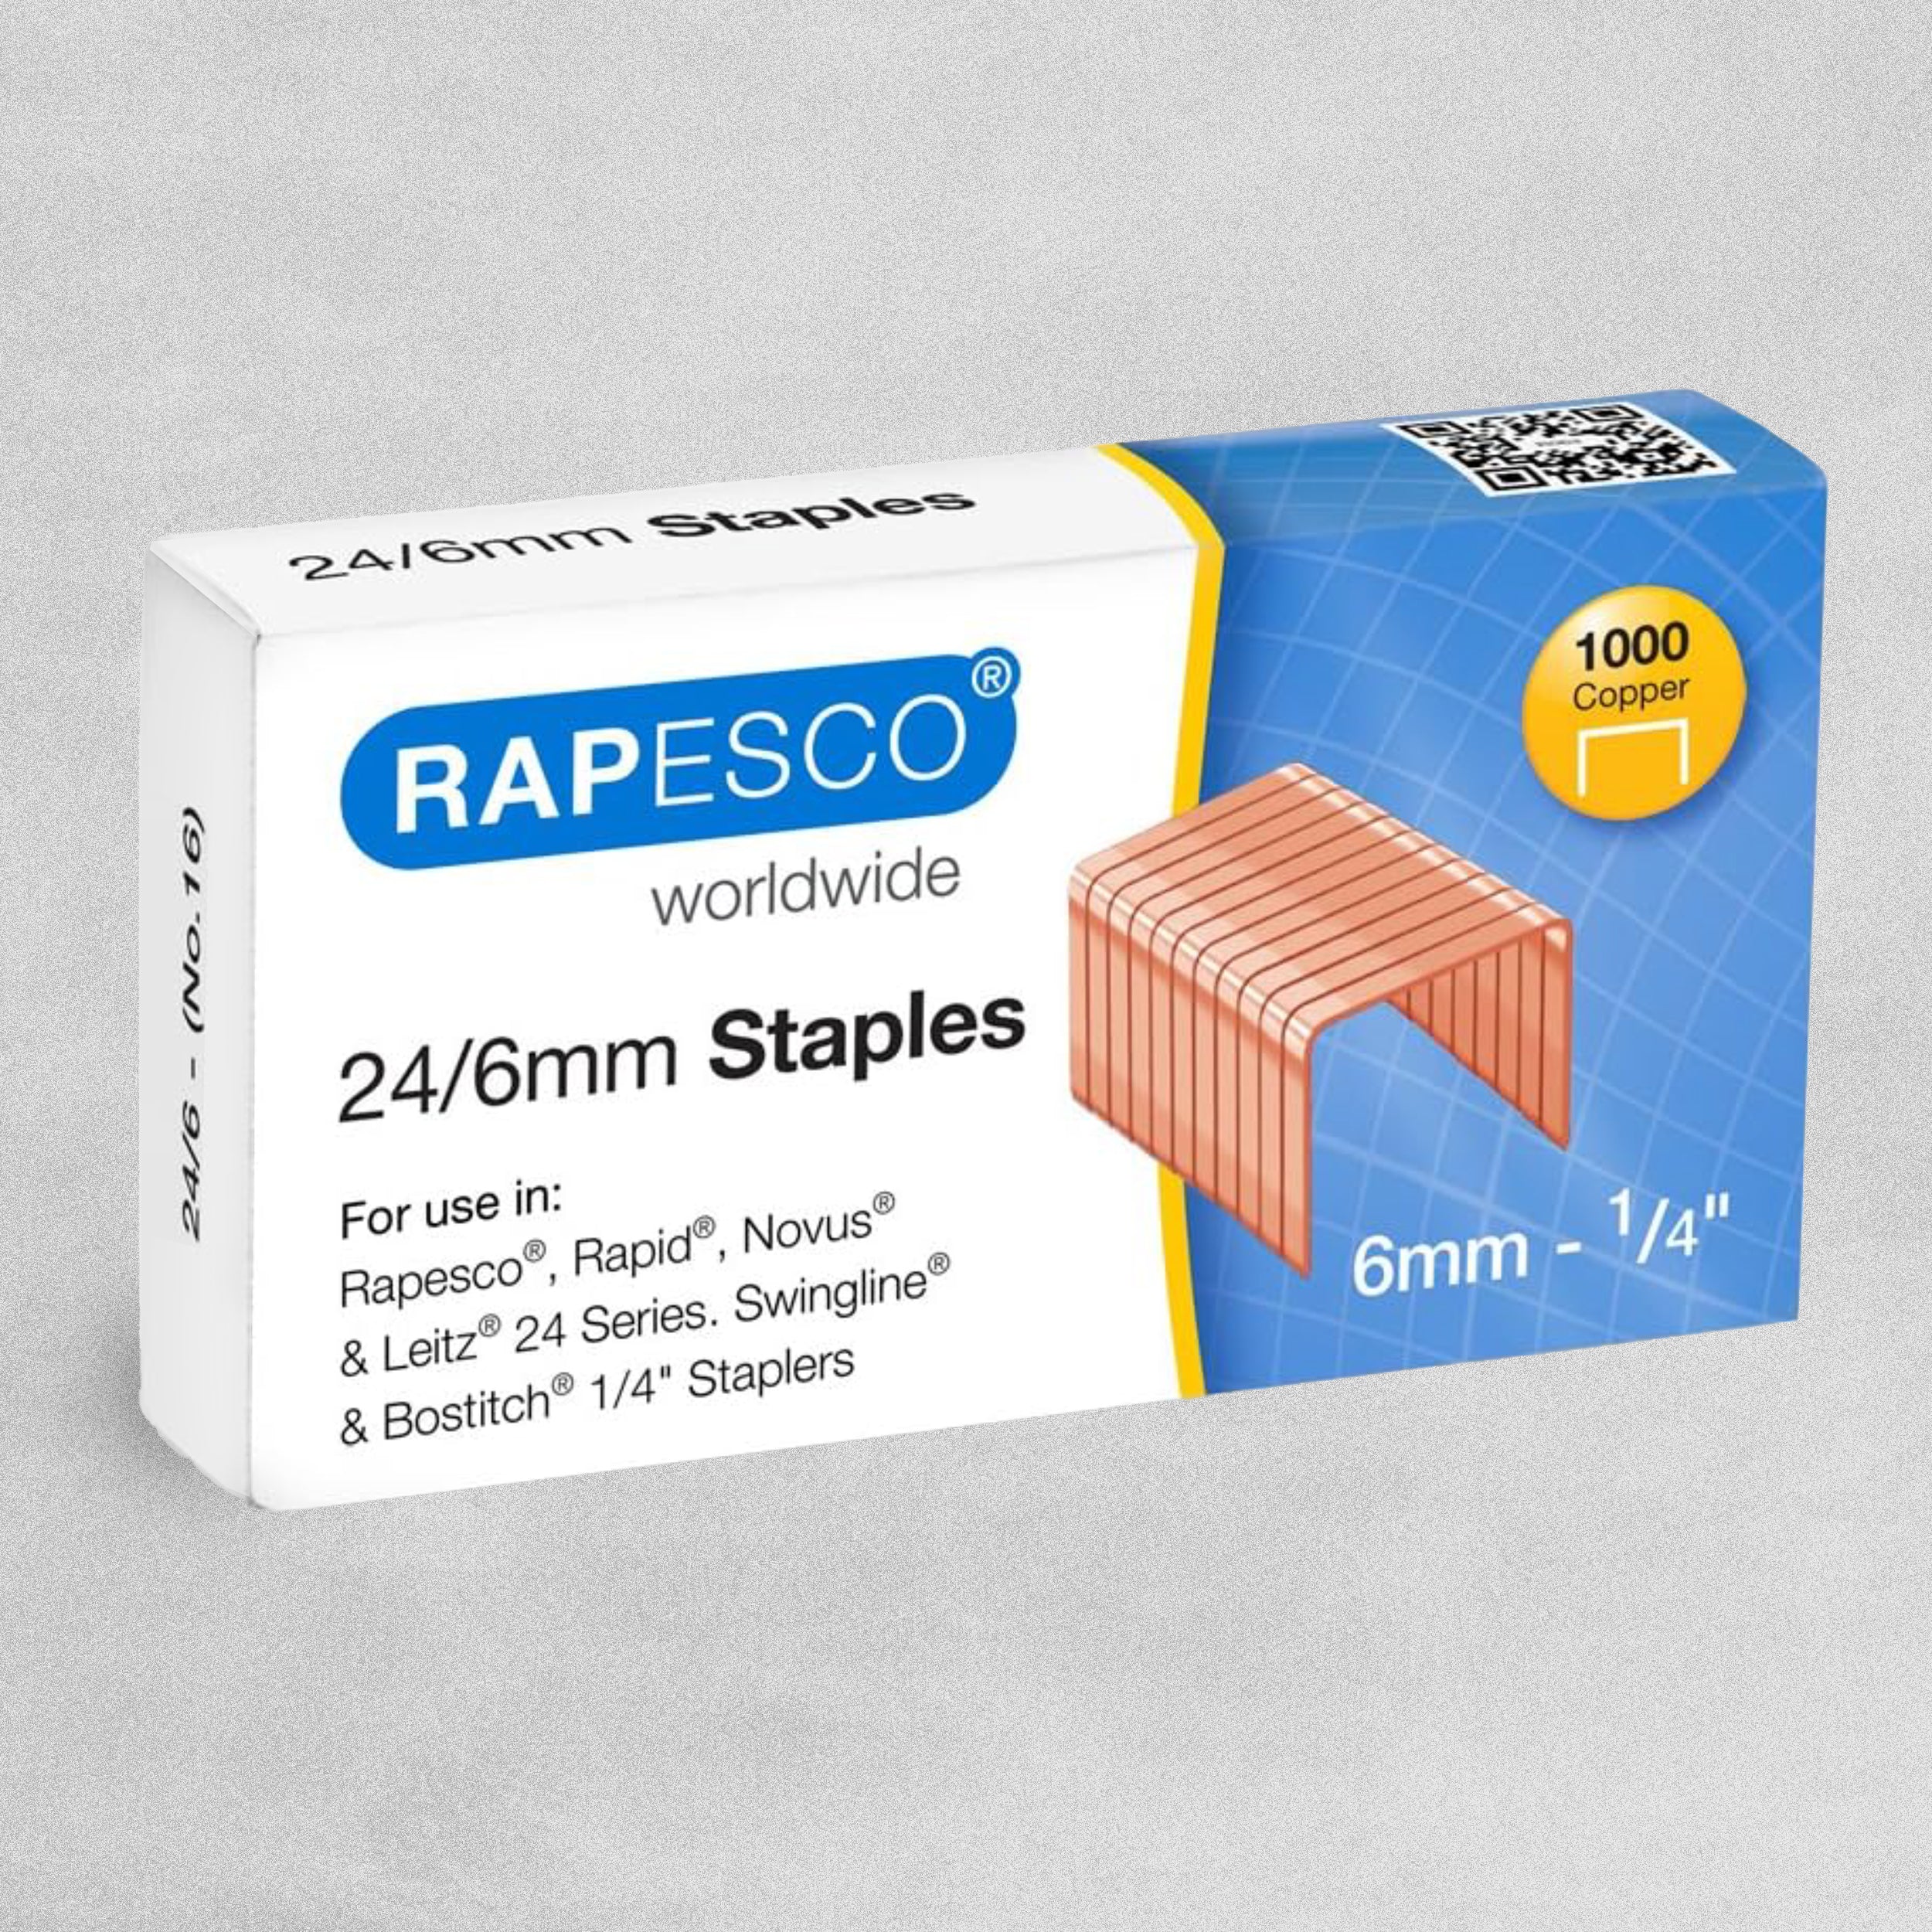 Rapesco Staples